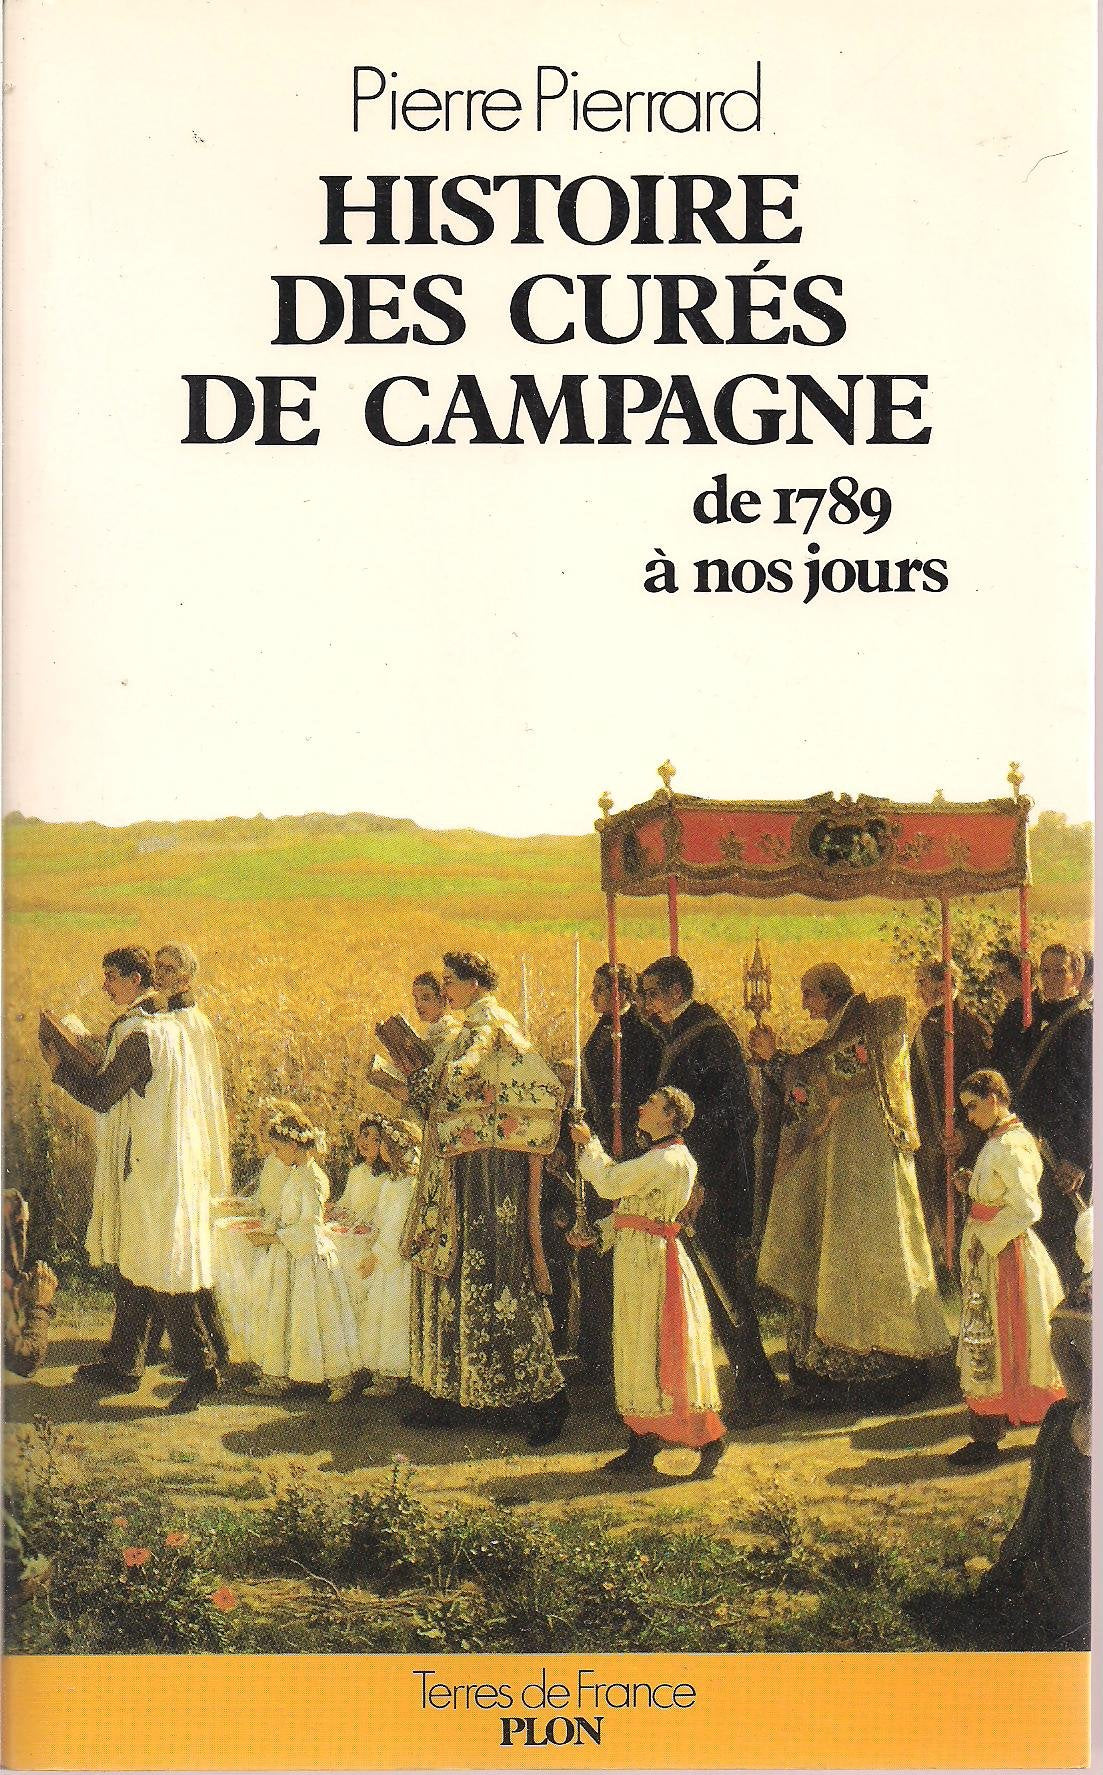 Livre ISBN 2259015425 Histoire des curés de campagne de 1789 à nos jours (Pierre Pierrard)